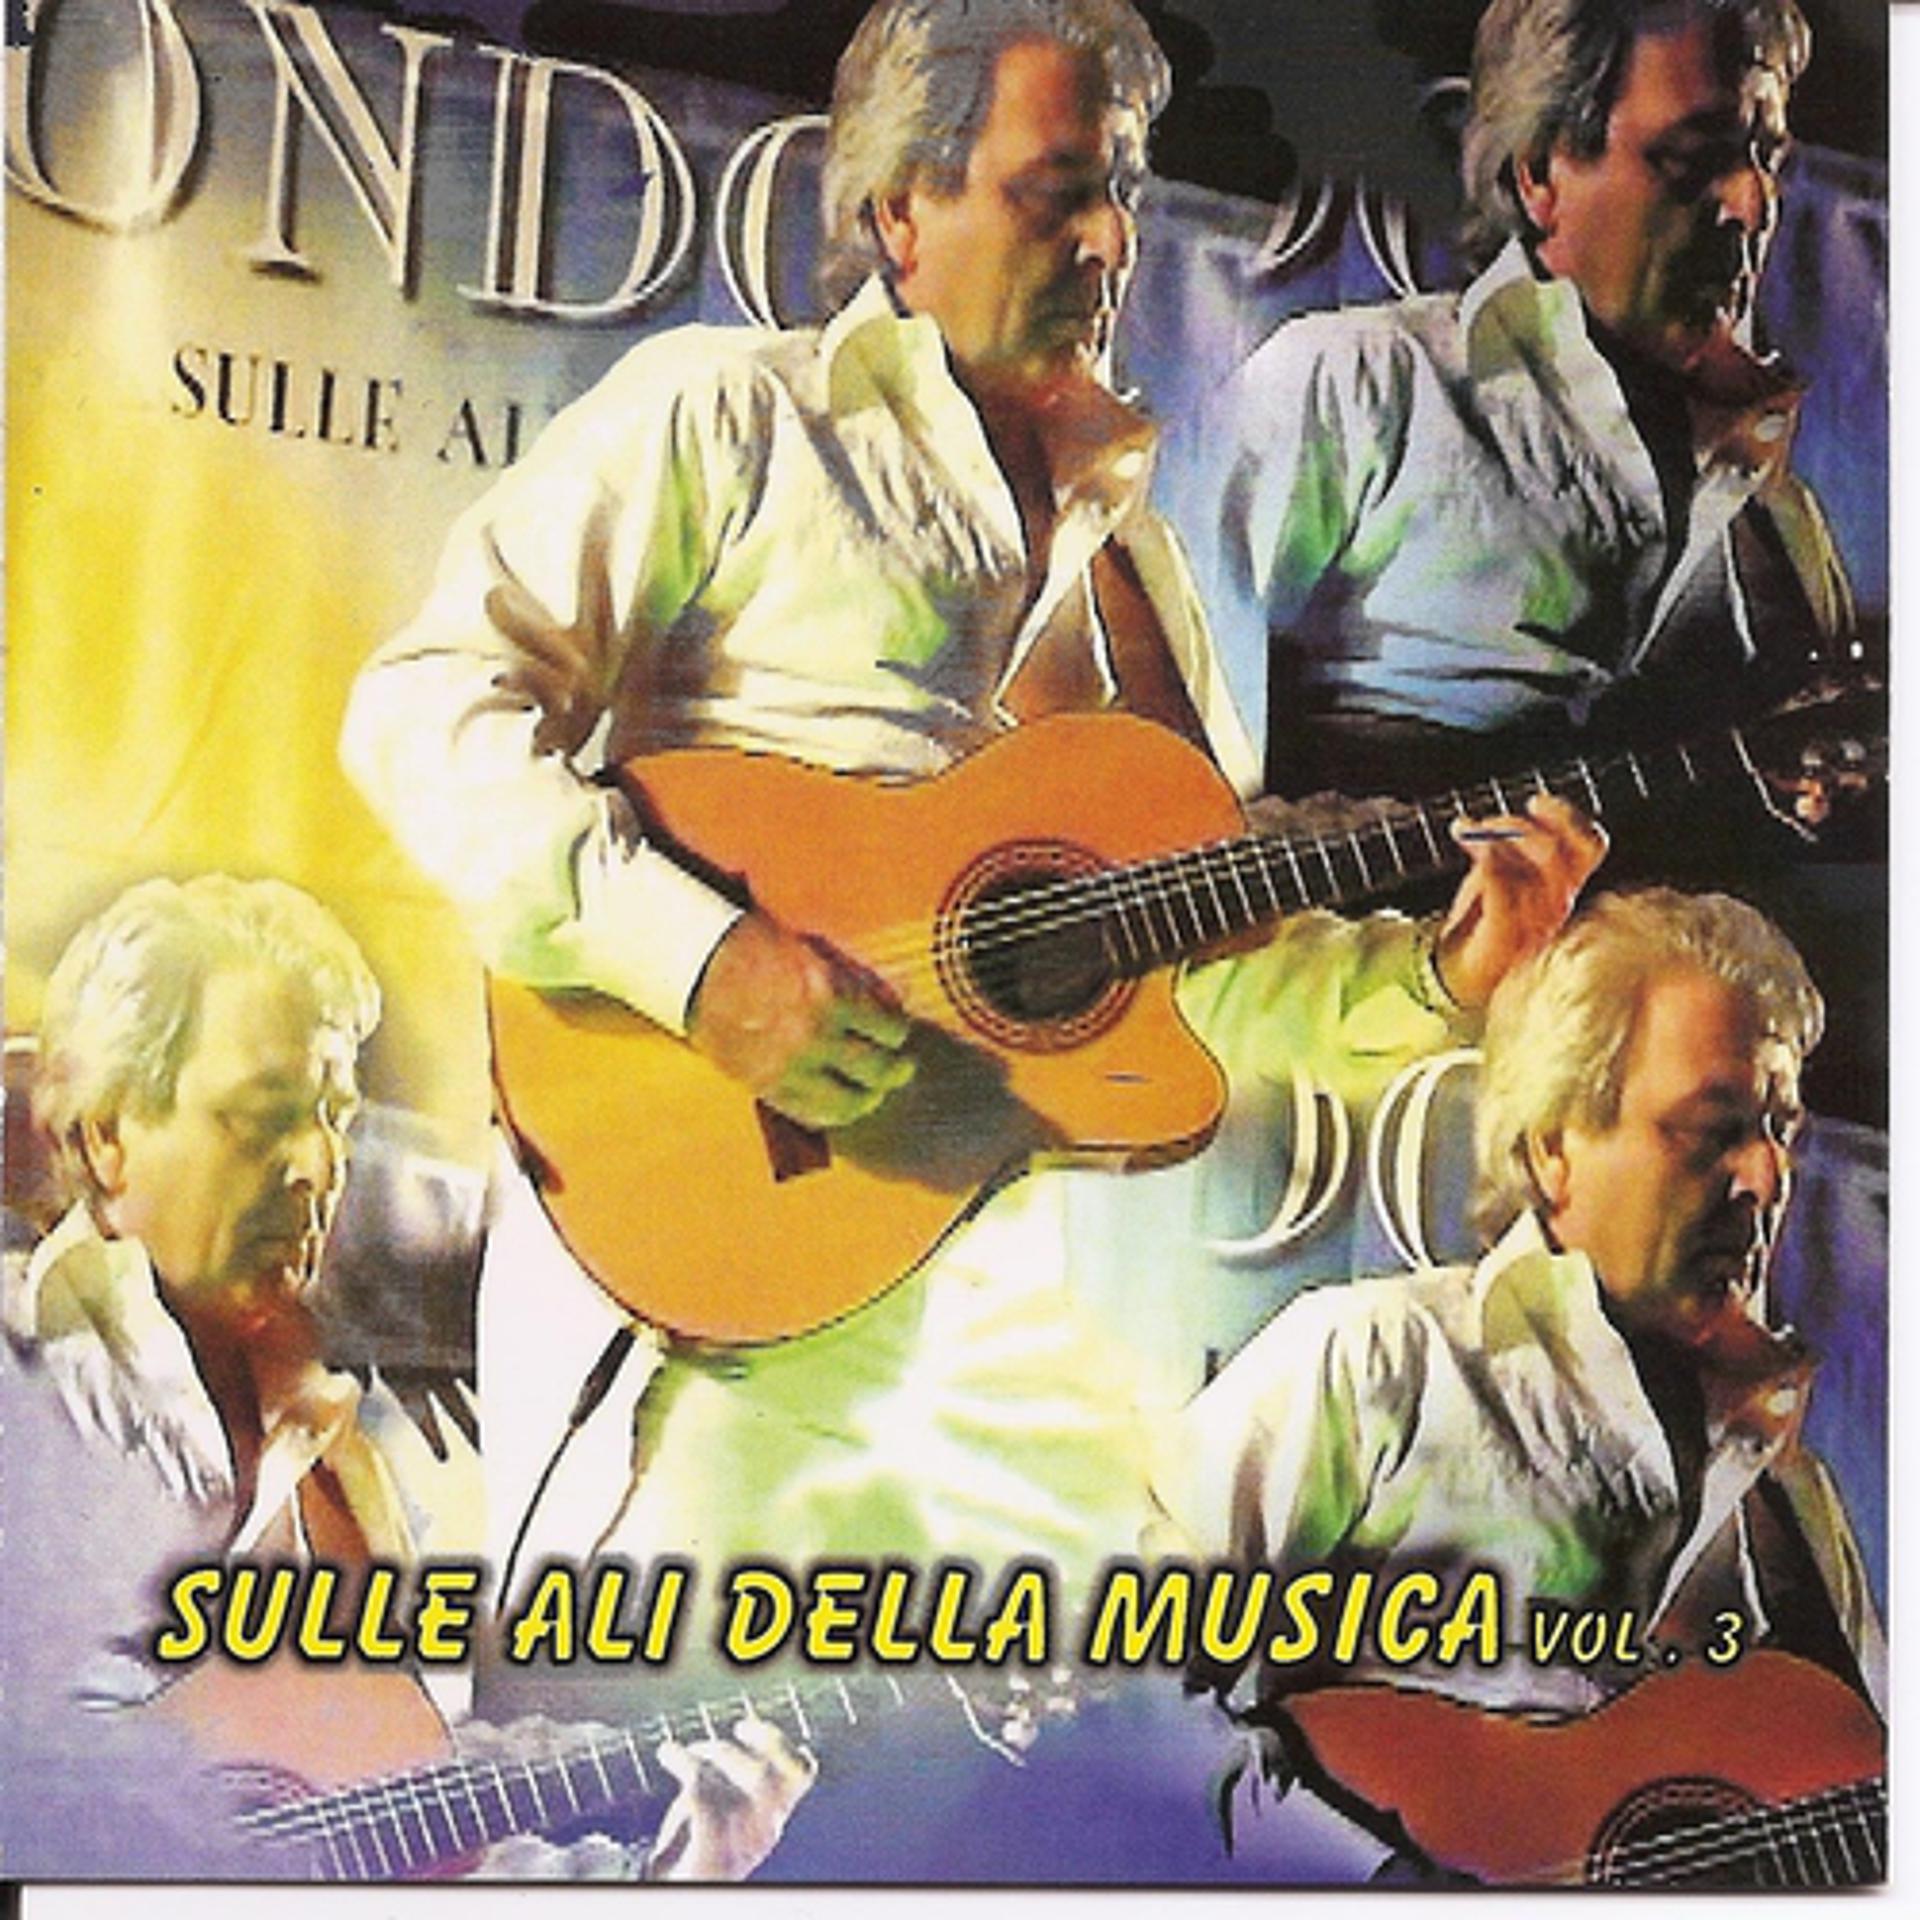 Постер к треку Cicci Guitar Condor - Petit Fleur